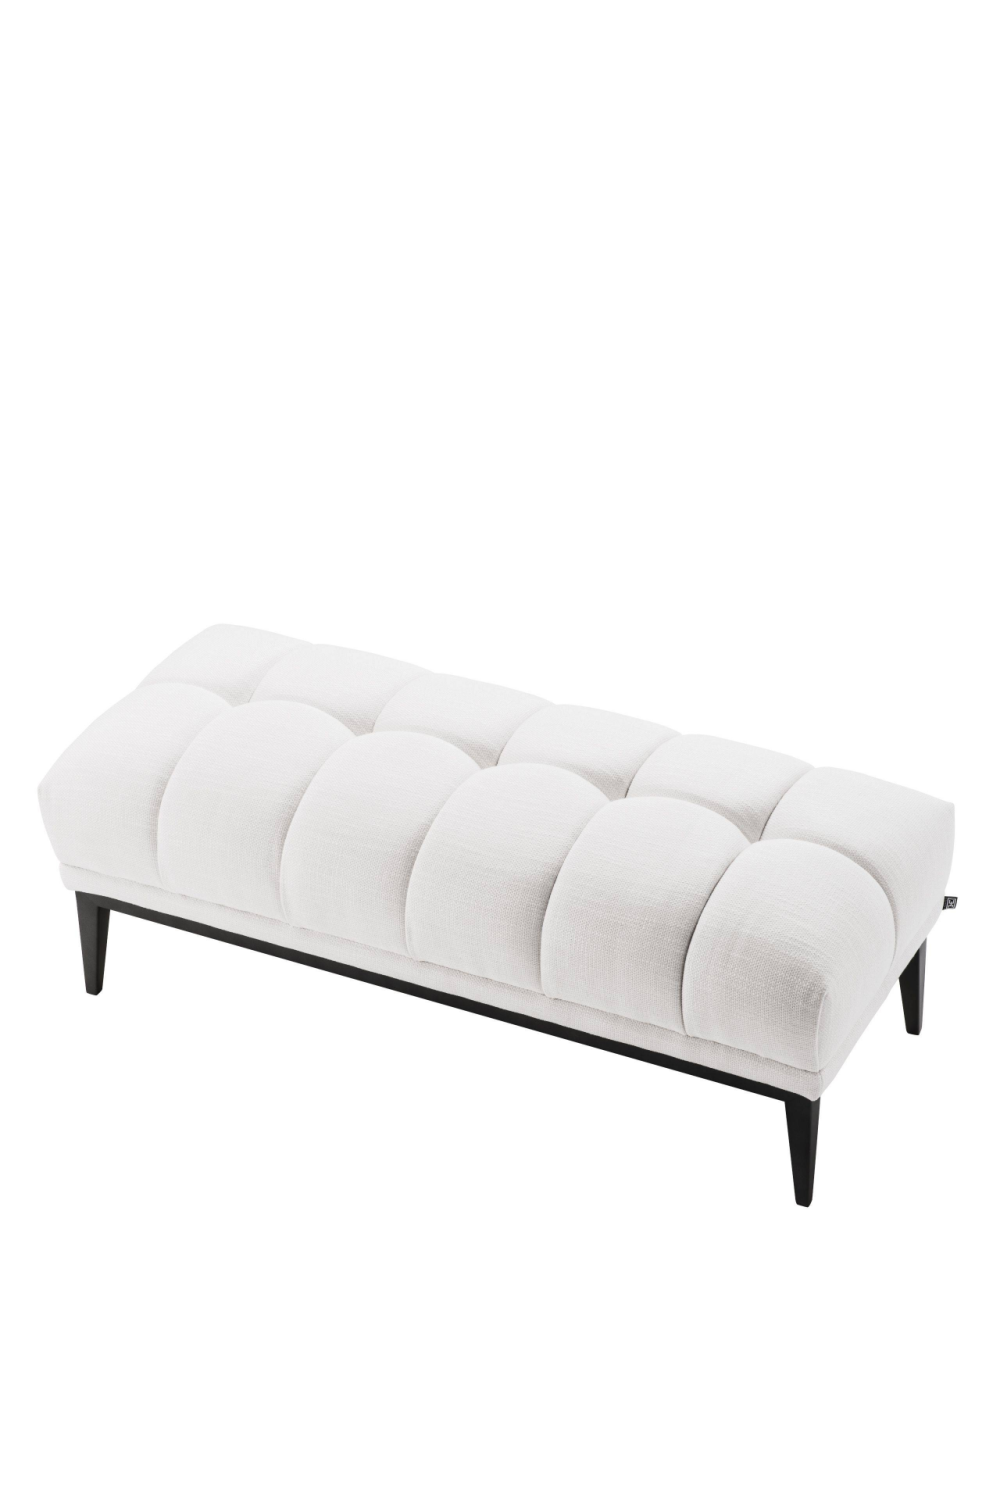 White Tufted Upholstered Bench | Eichholtz Aurelio | OROA